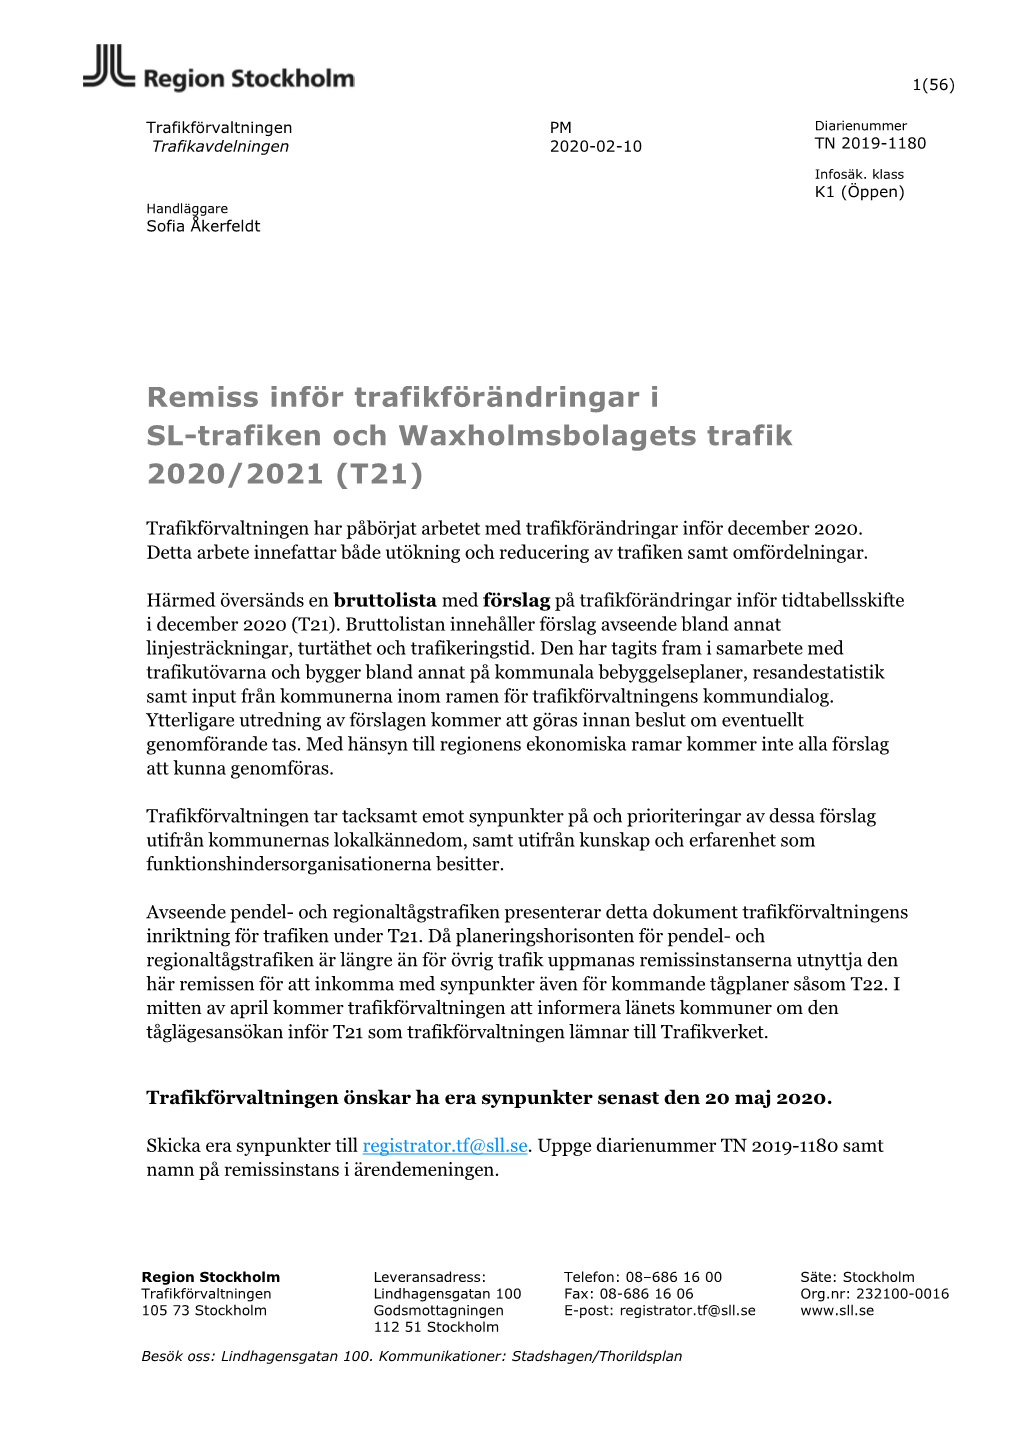 Remiss Inför Trafikförändringar I SL-Trafiken Och Waxholmsbolagets Trafik 2020/2021 (T21)